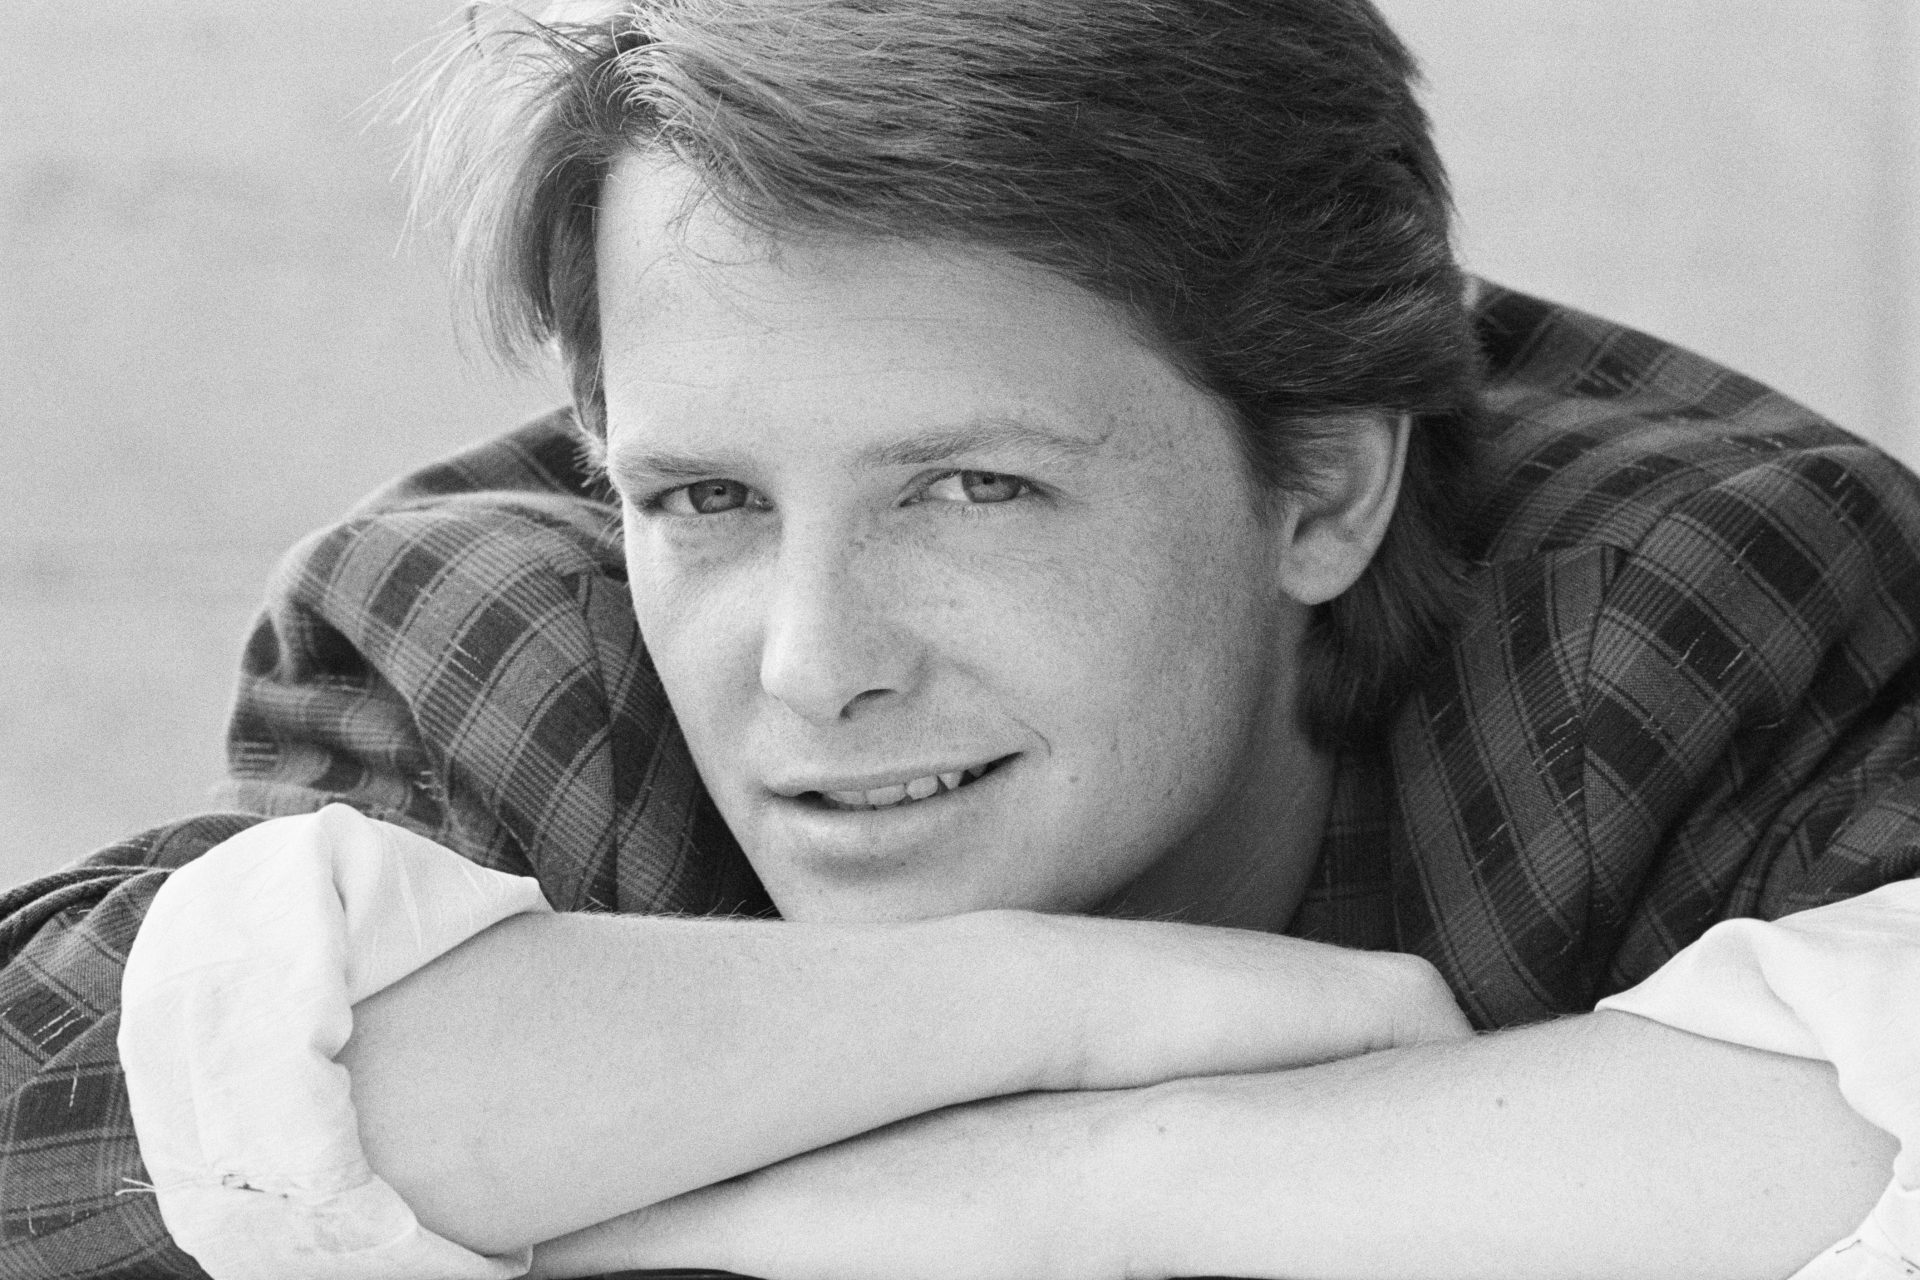 Michael J. Fox continua a lottare contro la sua malattia